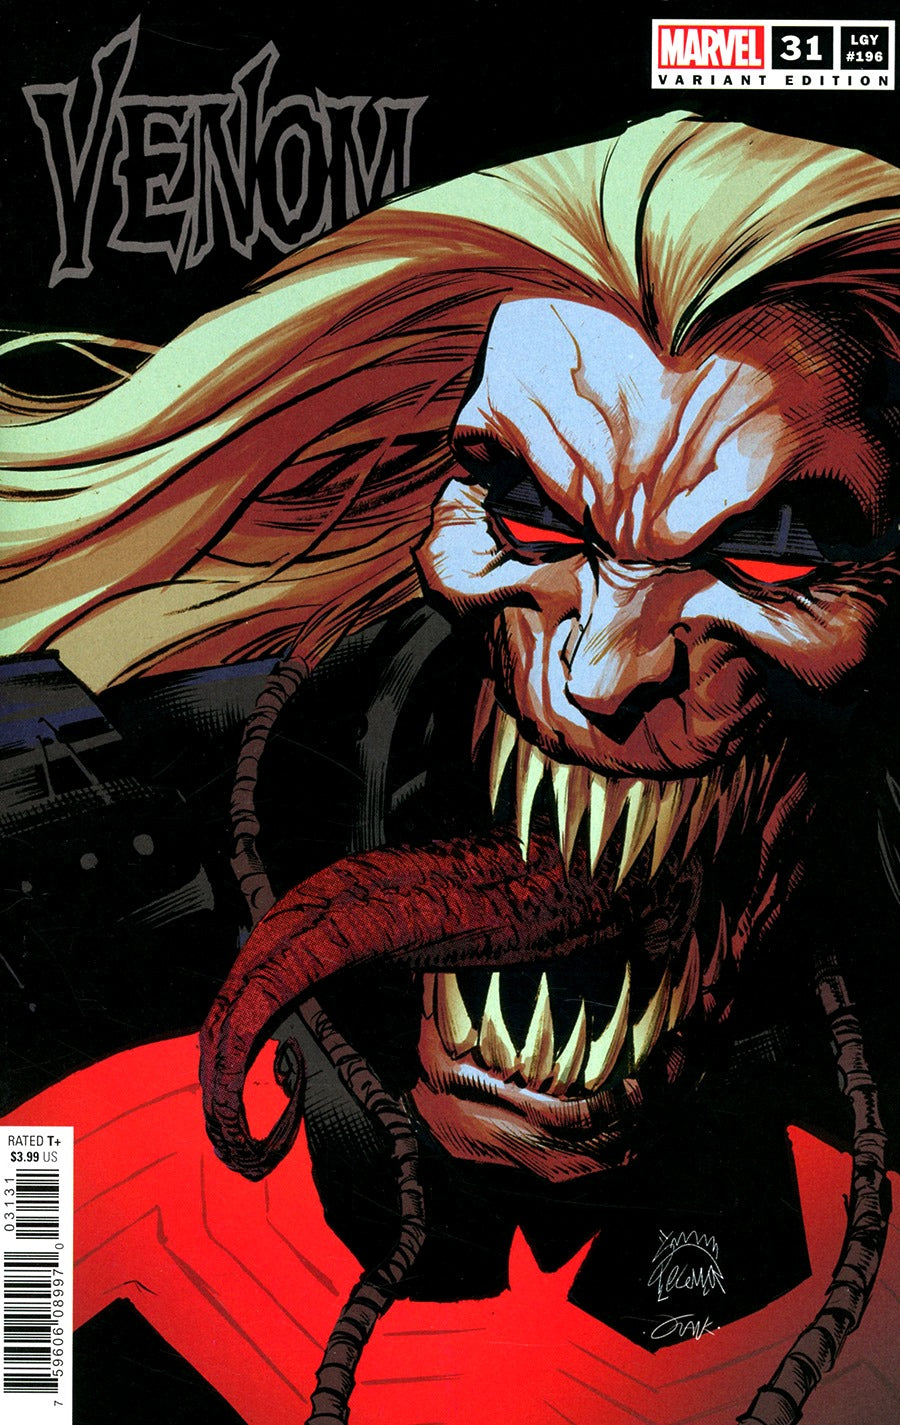 Venom (2018) #31 Ryan Stegman Cover